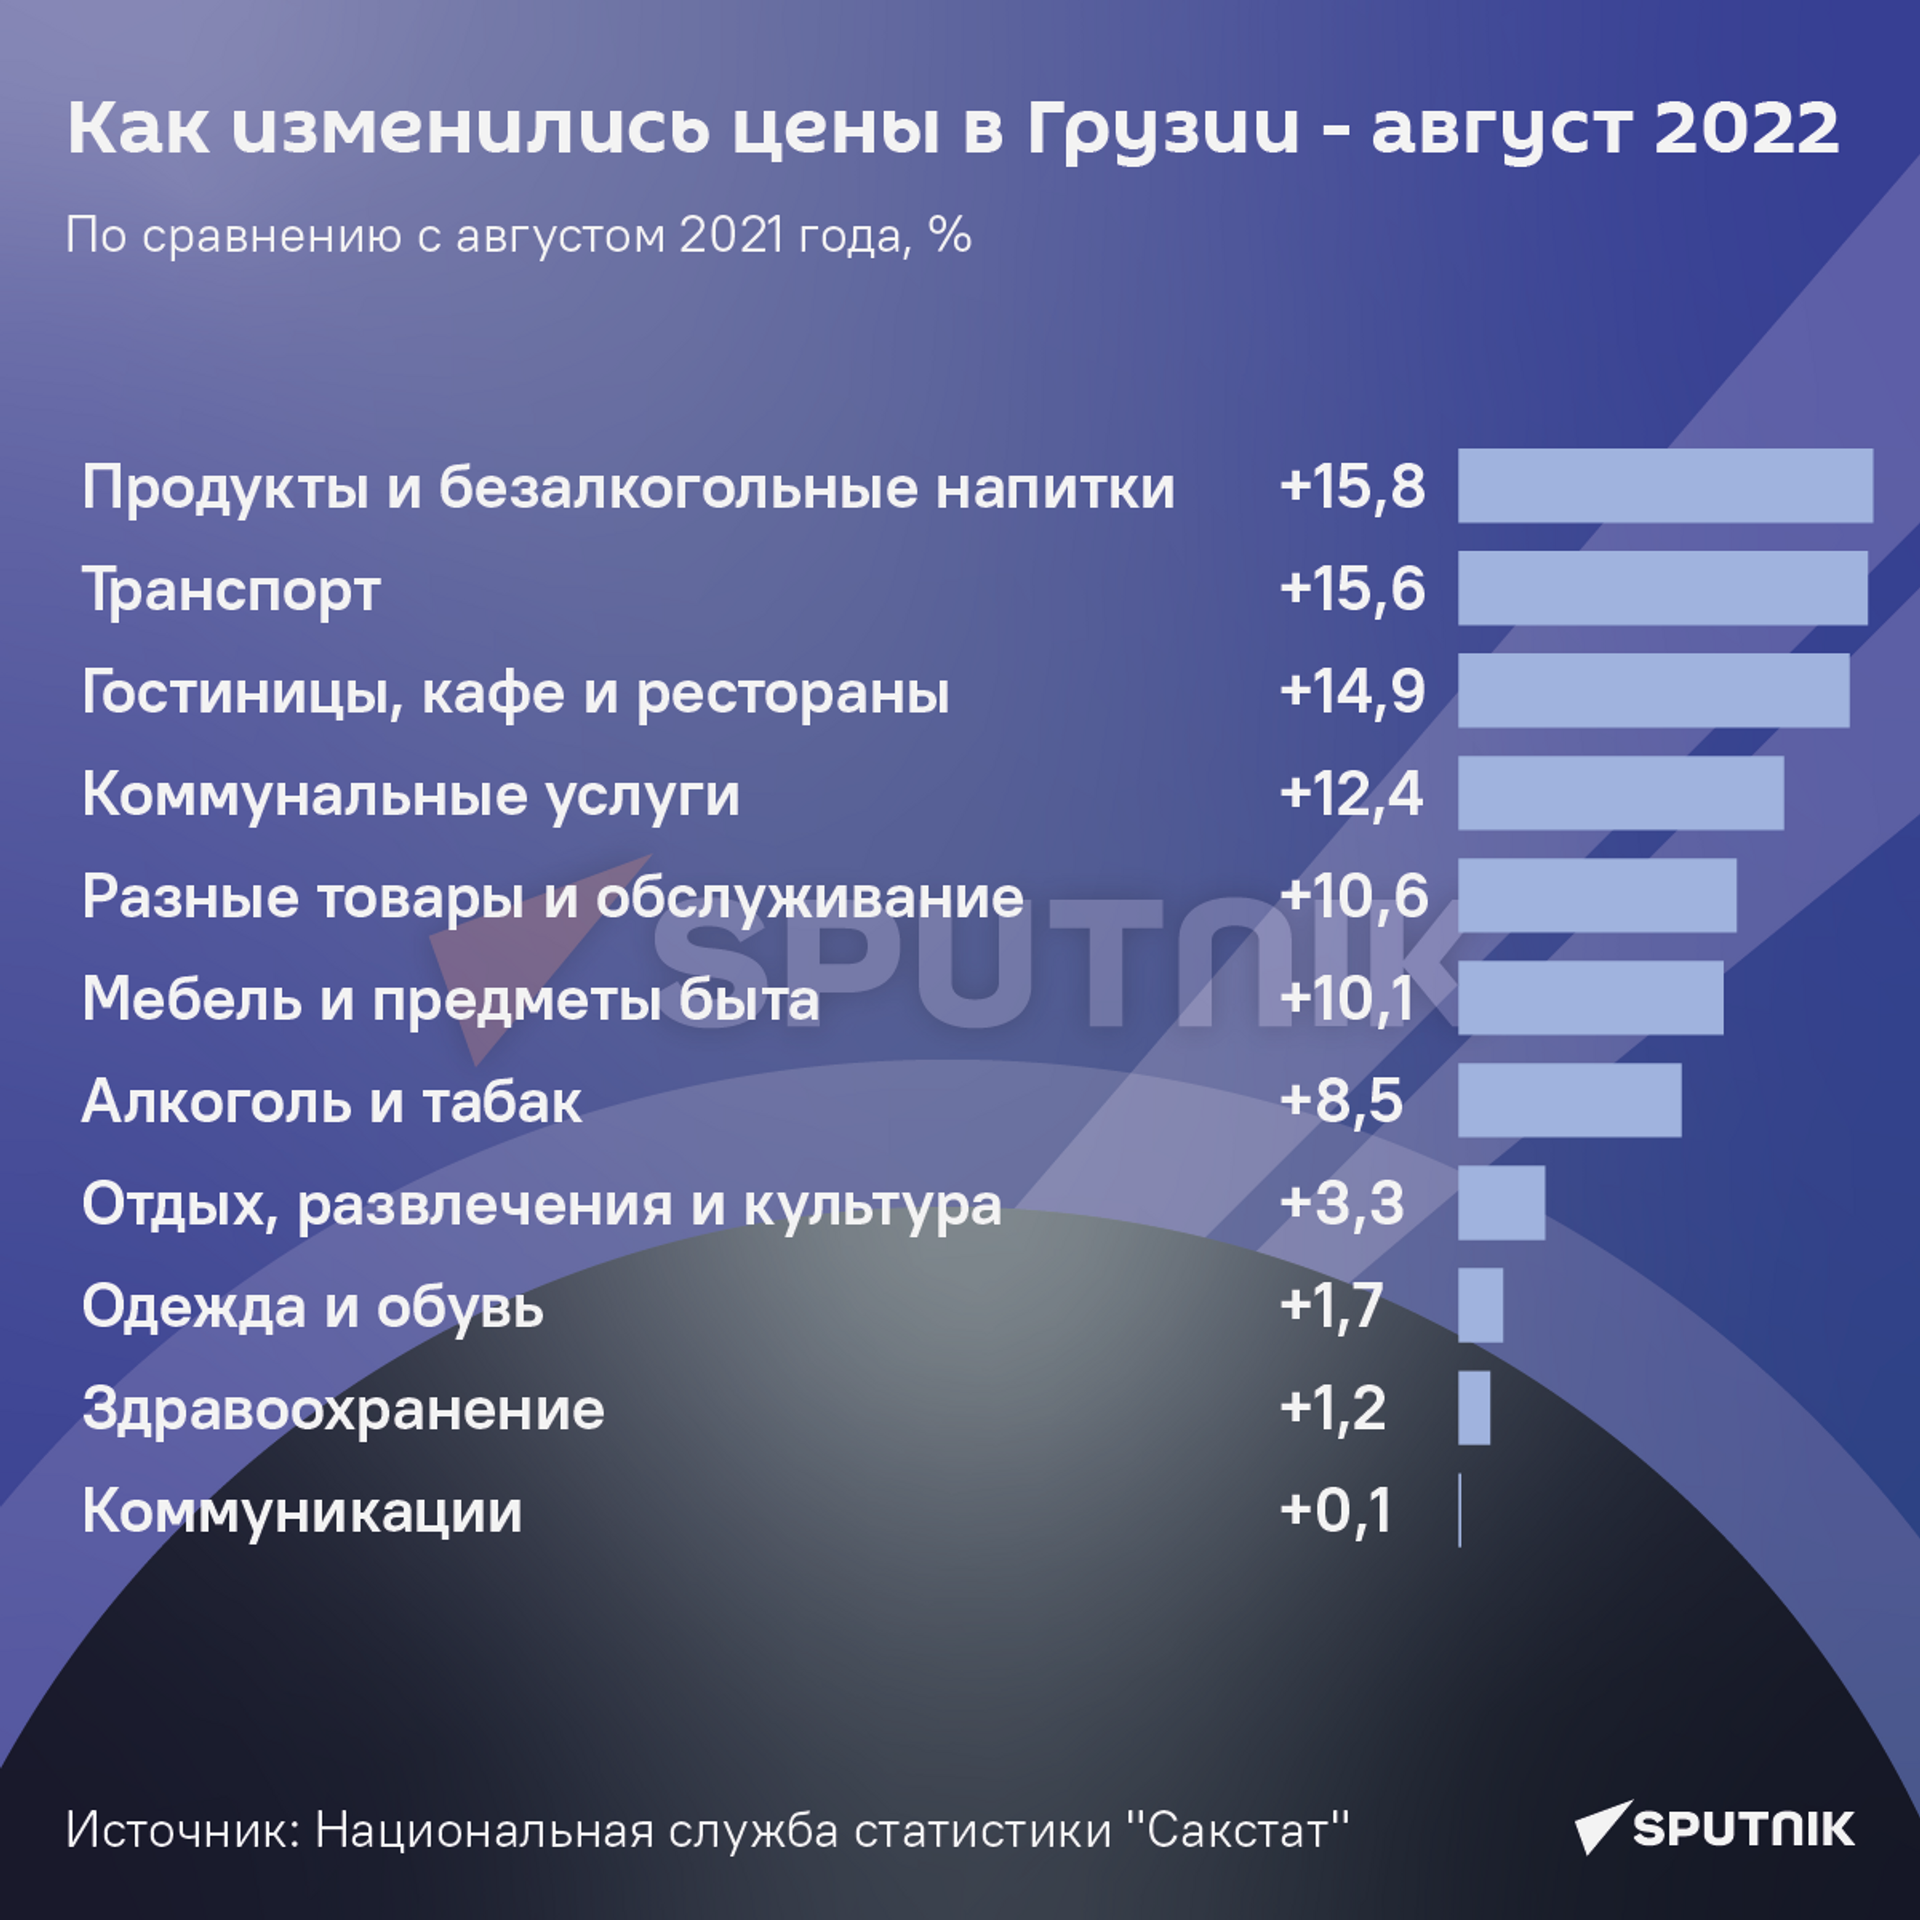 Как изменились цены в Грузии - август 2022 года - Sputnik Грузия, 1920, 09.09.2022